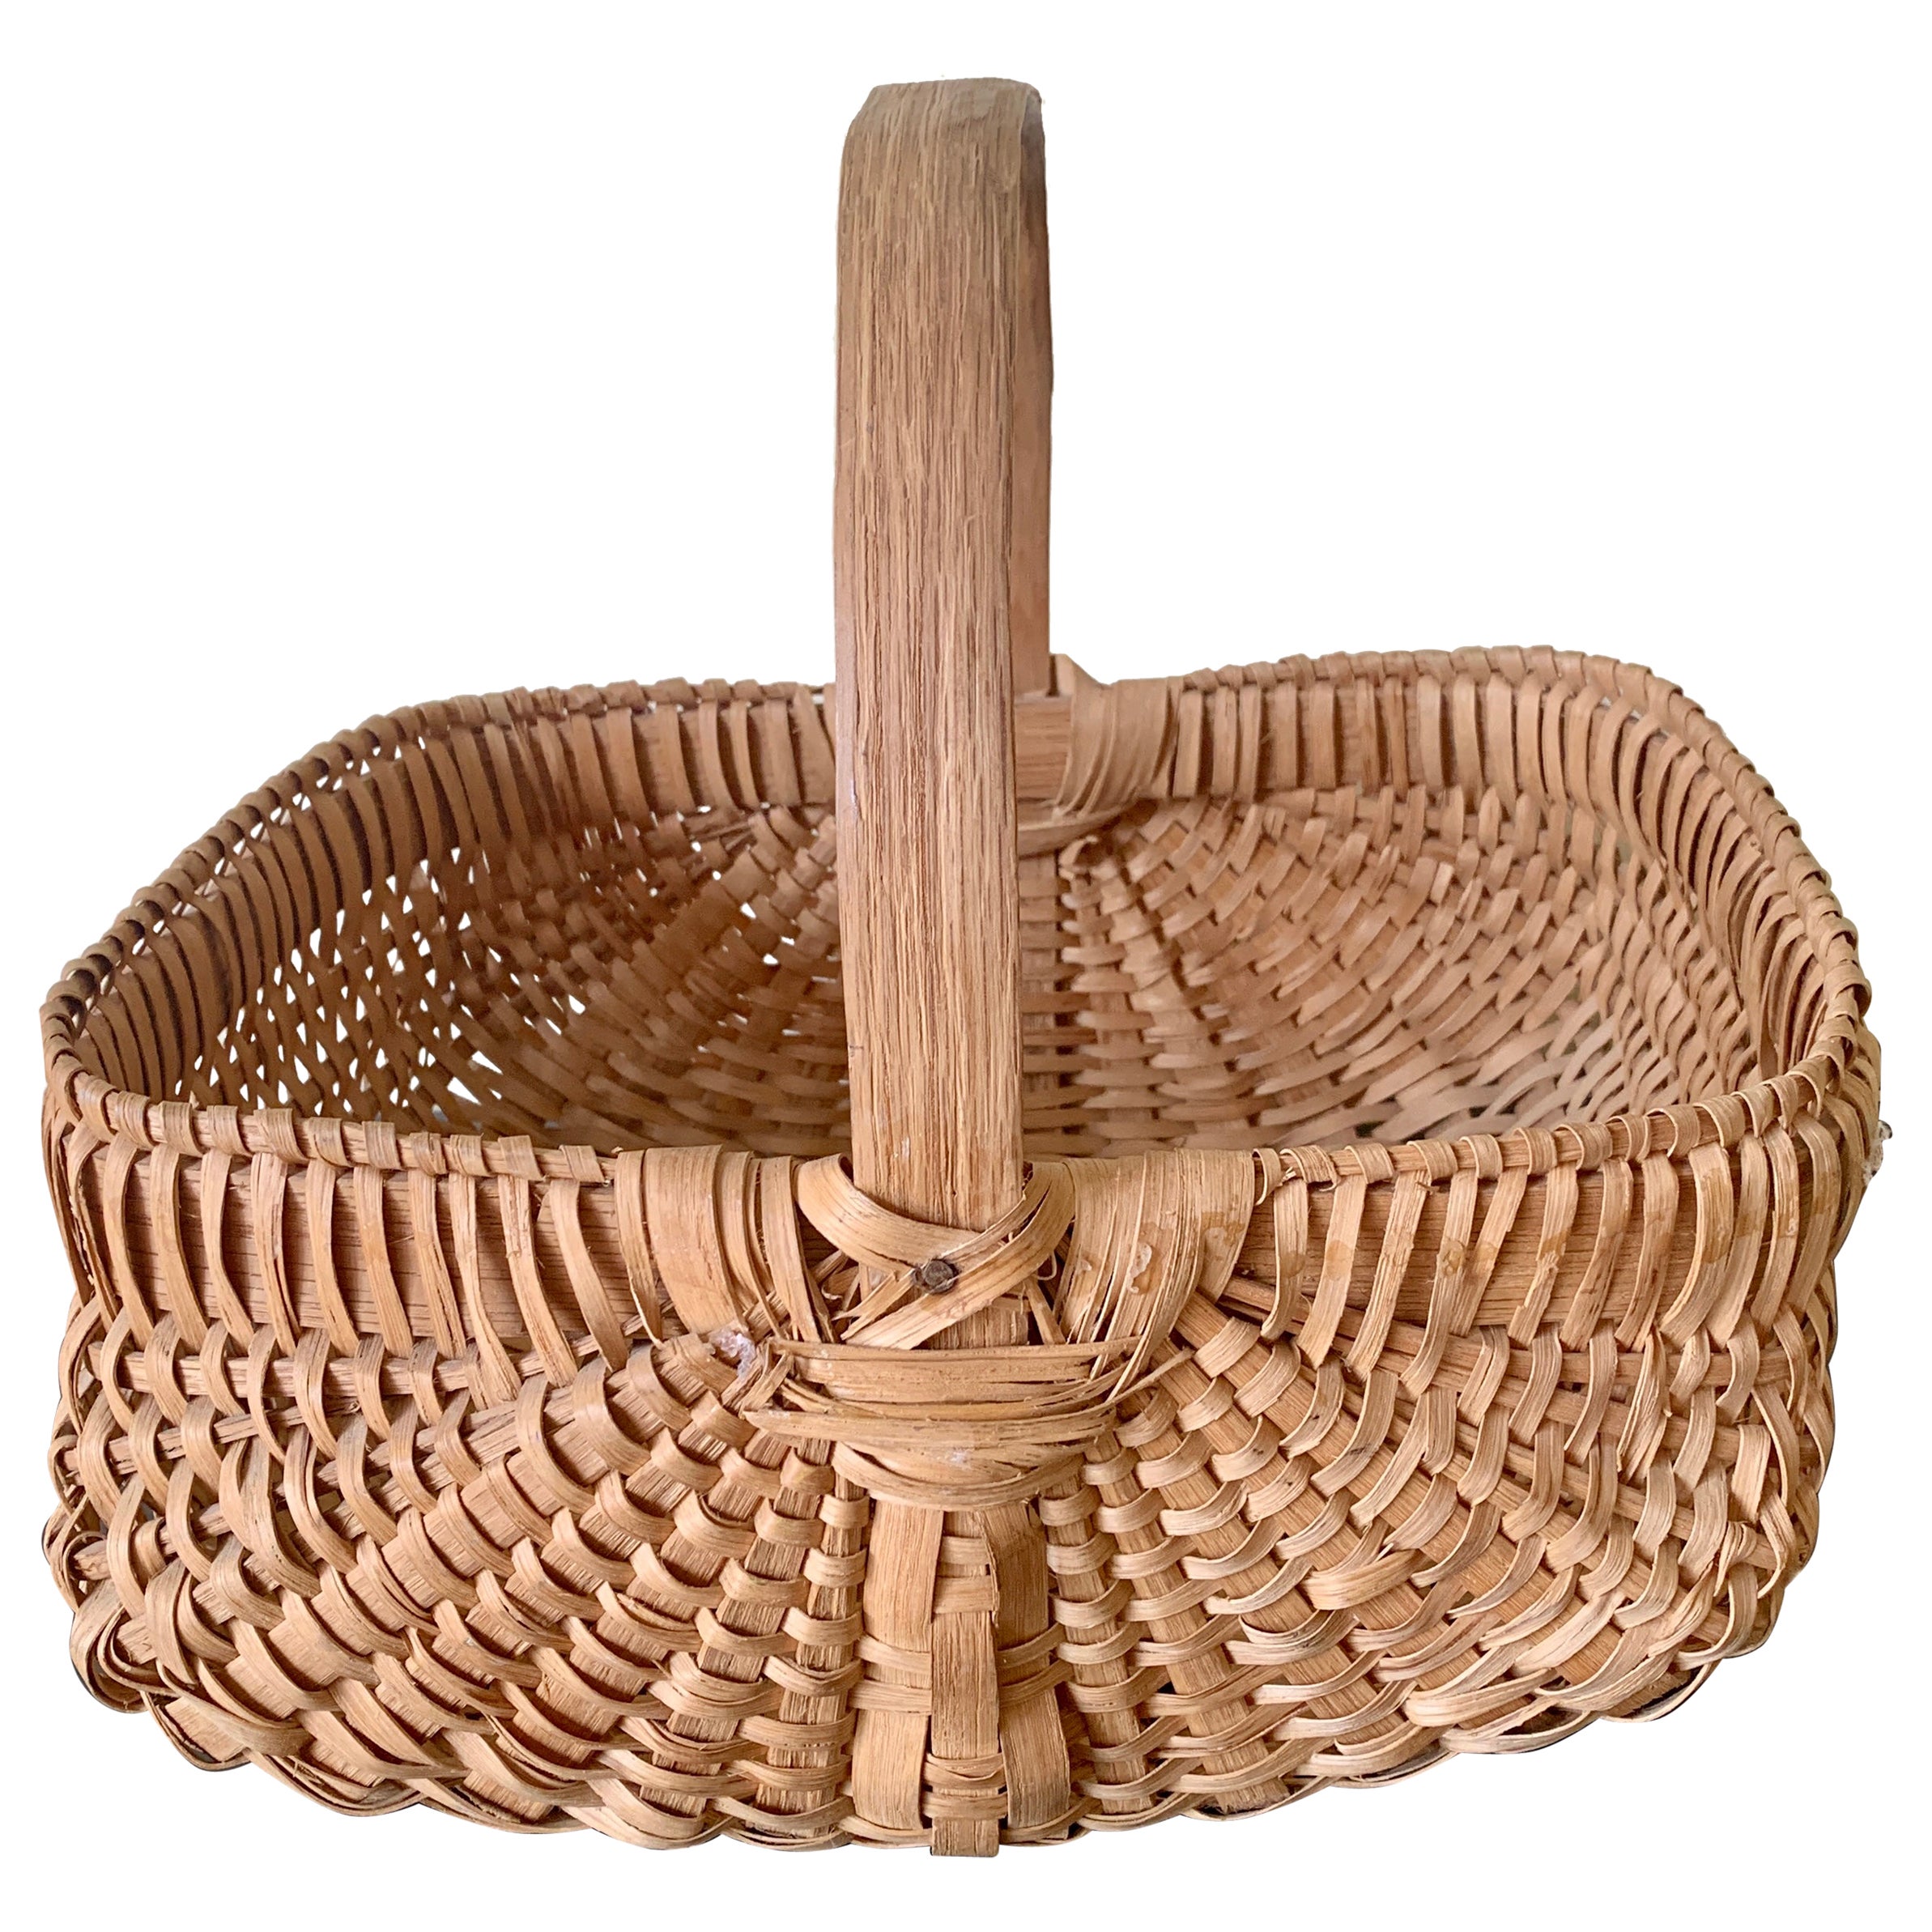 Antique Early 20th Century American Splint Oak Basket